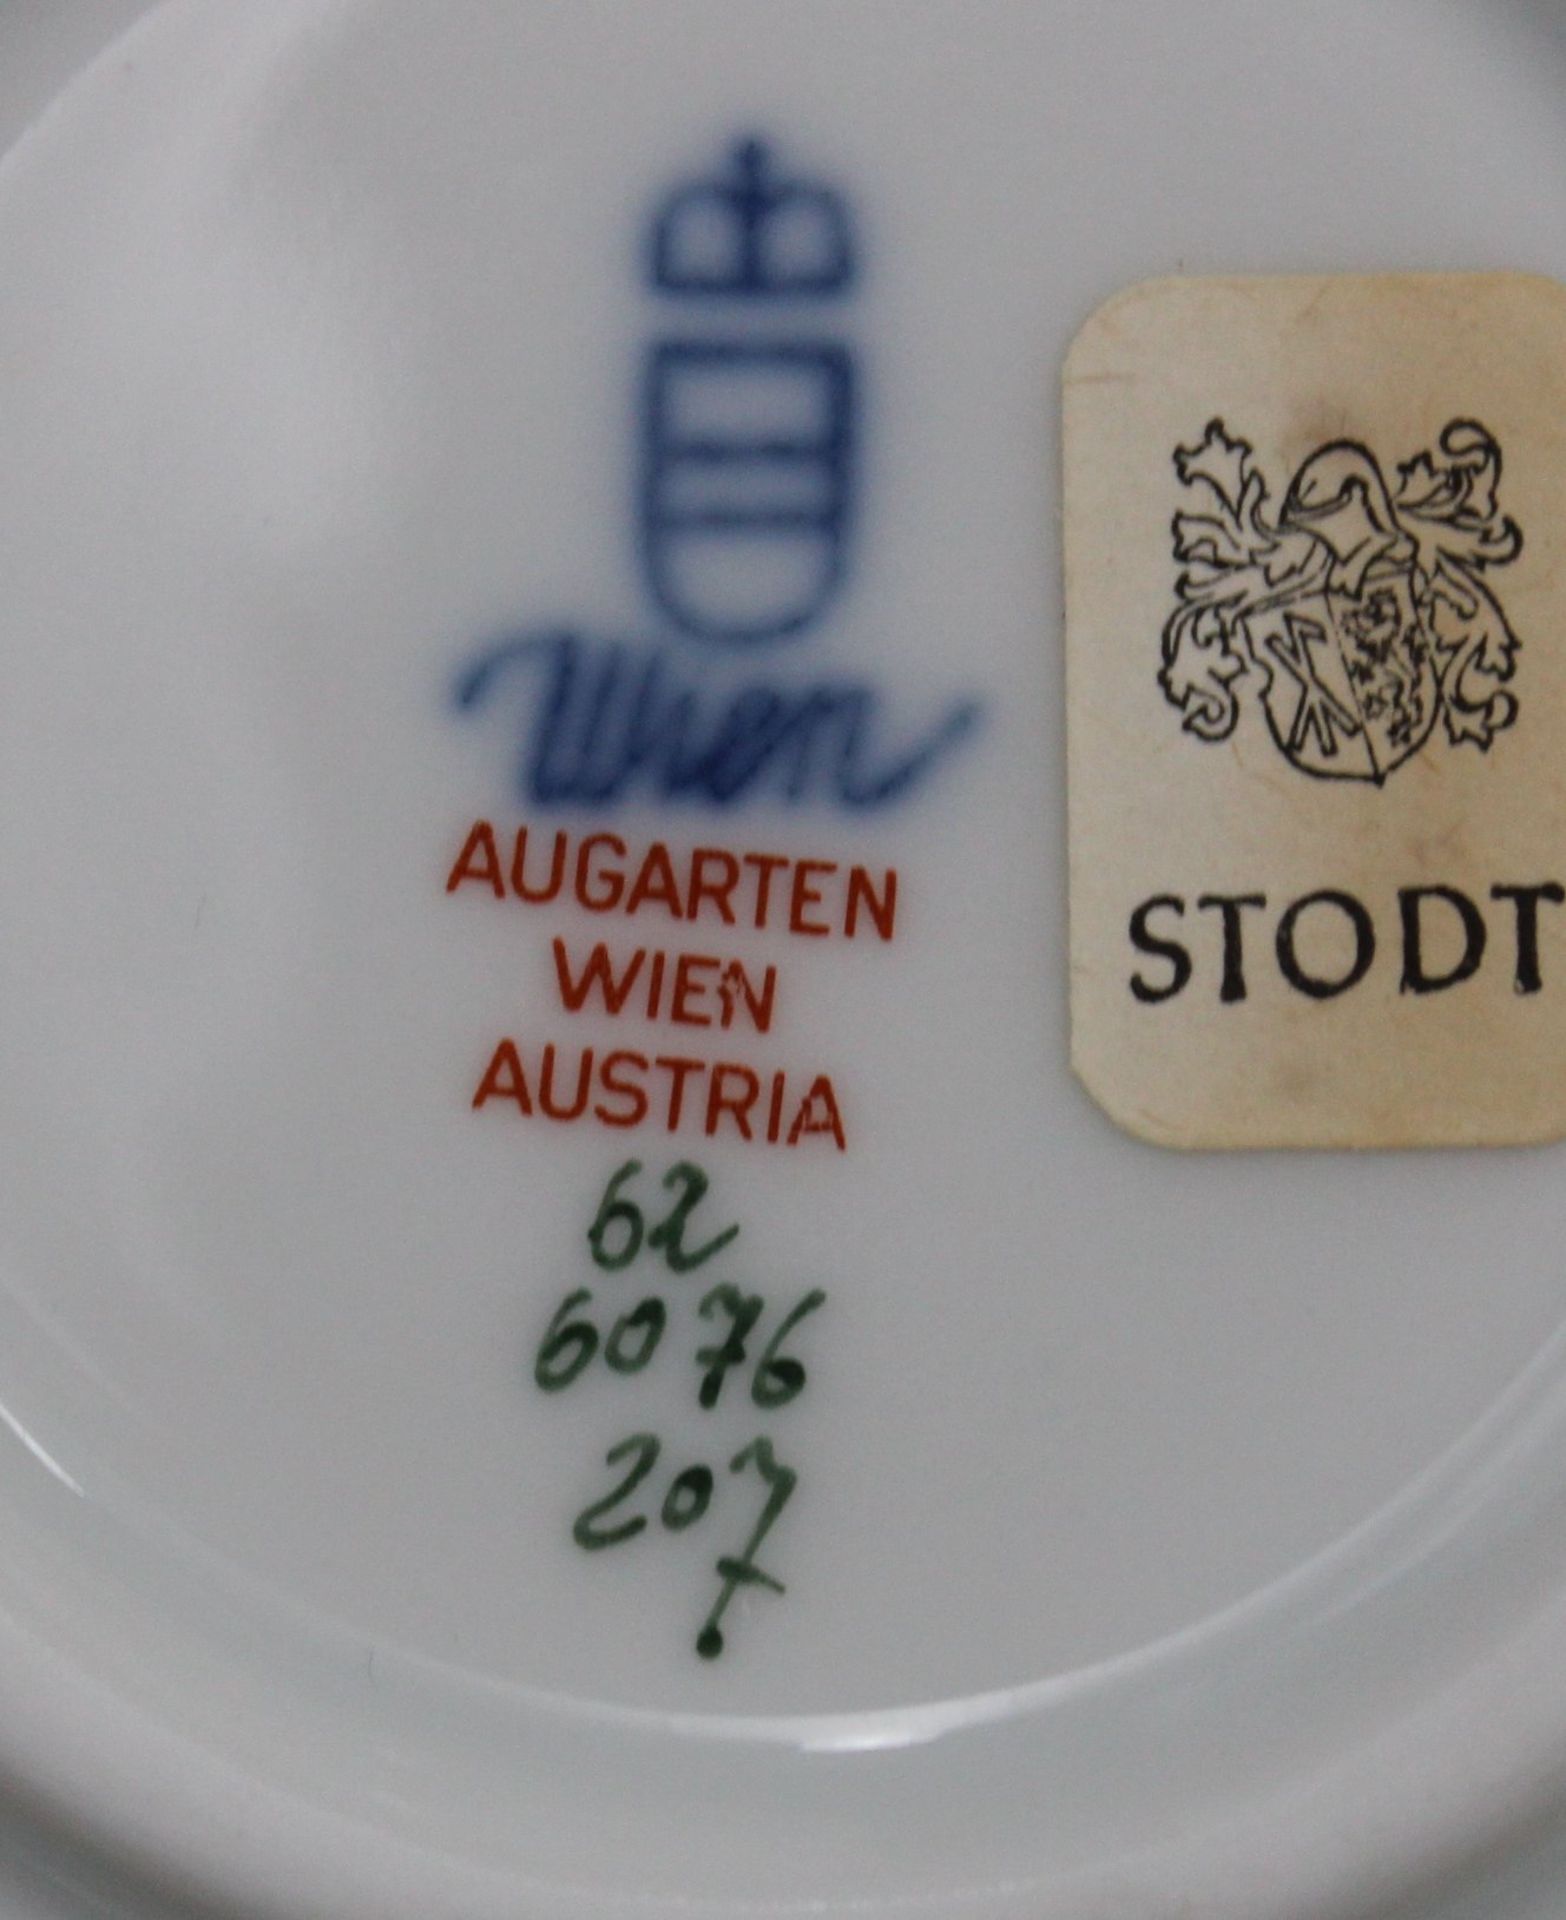 10tlg. Jagd-Service, Wien Augarten, Deckelterrine, ovale Platte, Schale, Sauciere, 6x flache Teller - Bild 2 aus 3